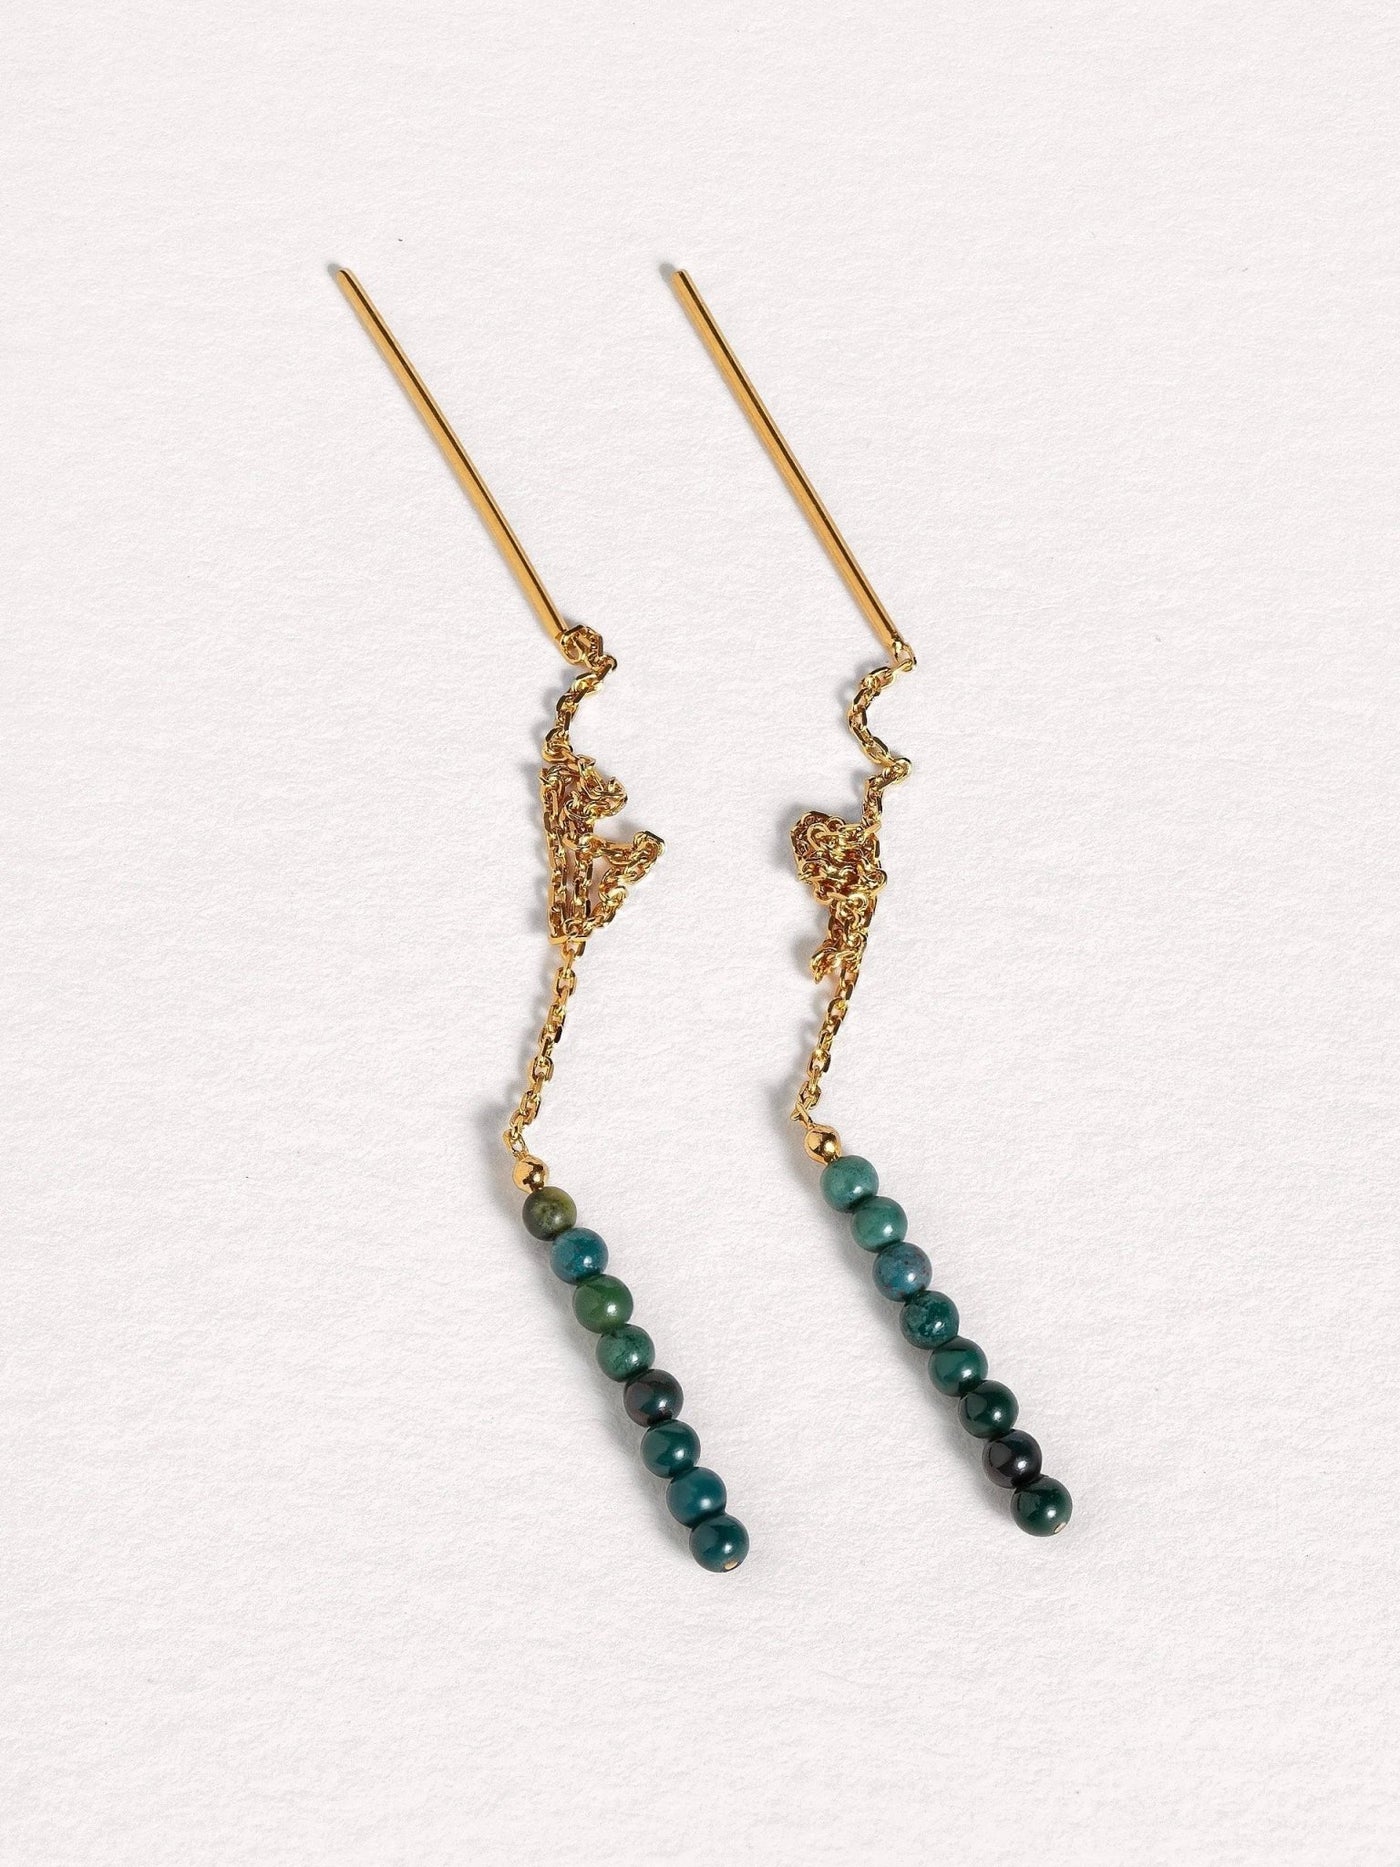 Adela Long Chain Earrings - 3. Jade105MMbeaded earringsChain EarringsLunai Jewelry